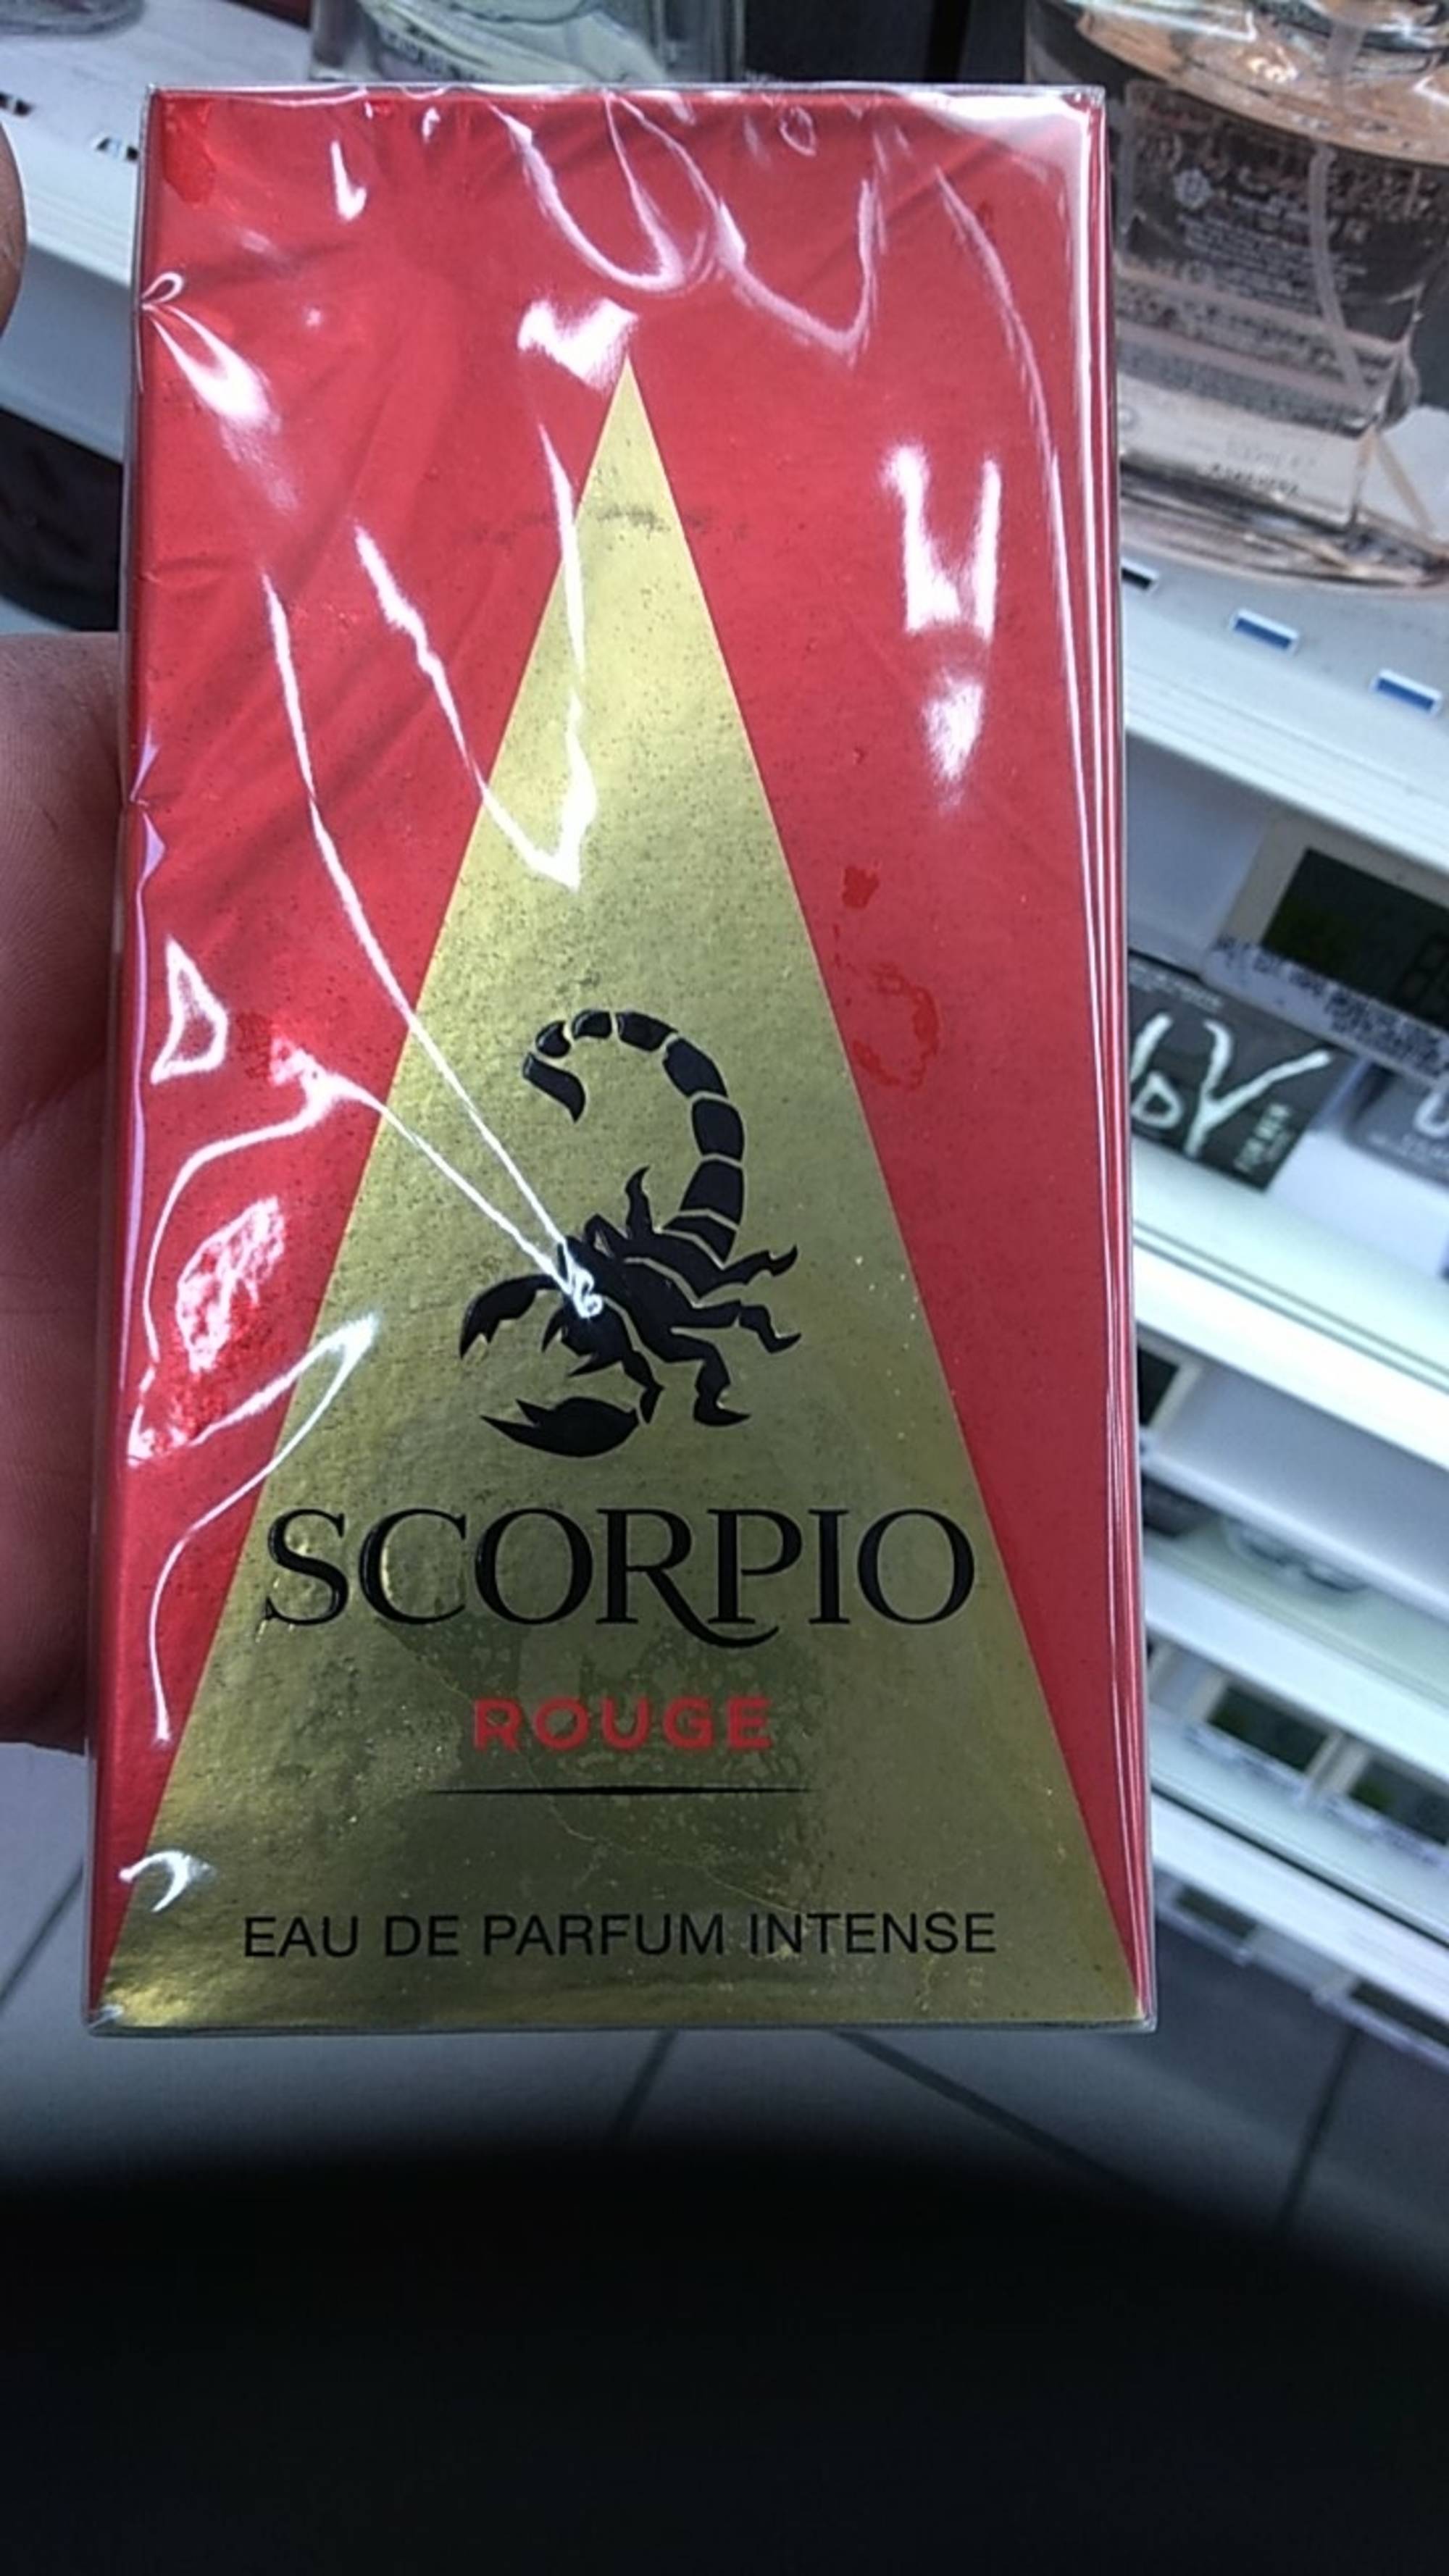 SCORPIO - Rouge - Eau de parfum intense